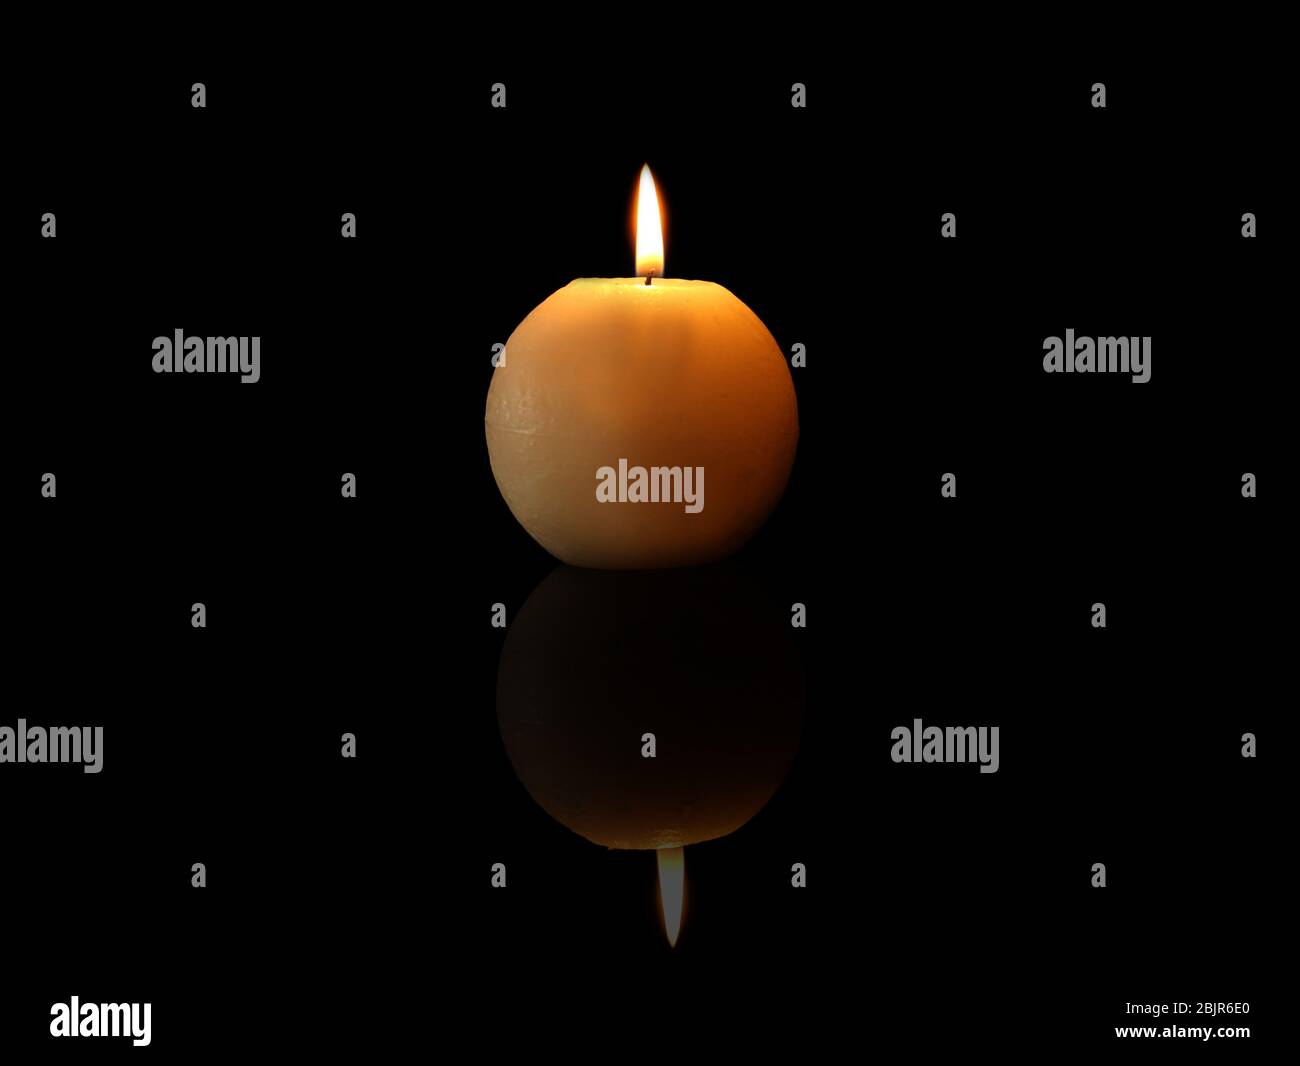 Burning candle on black background Stock Photo